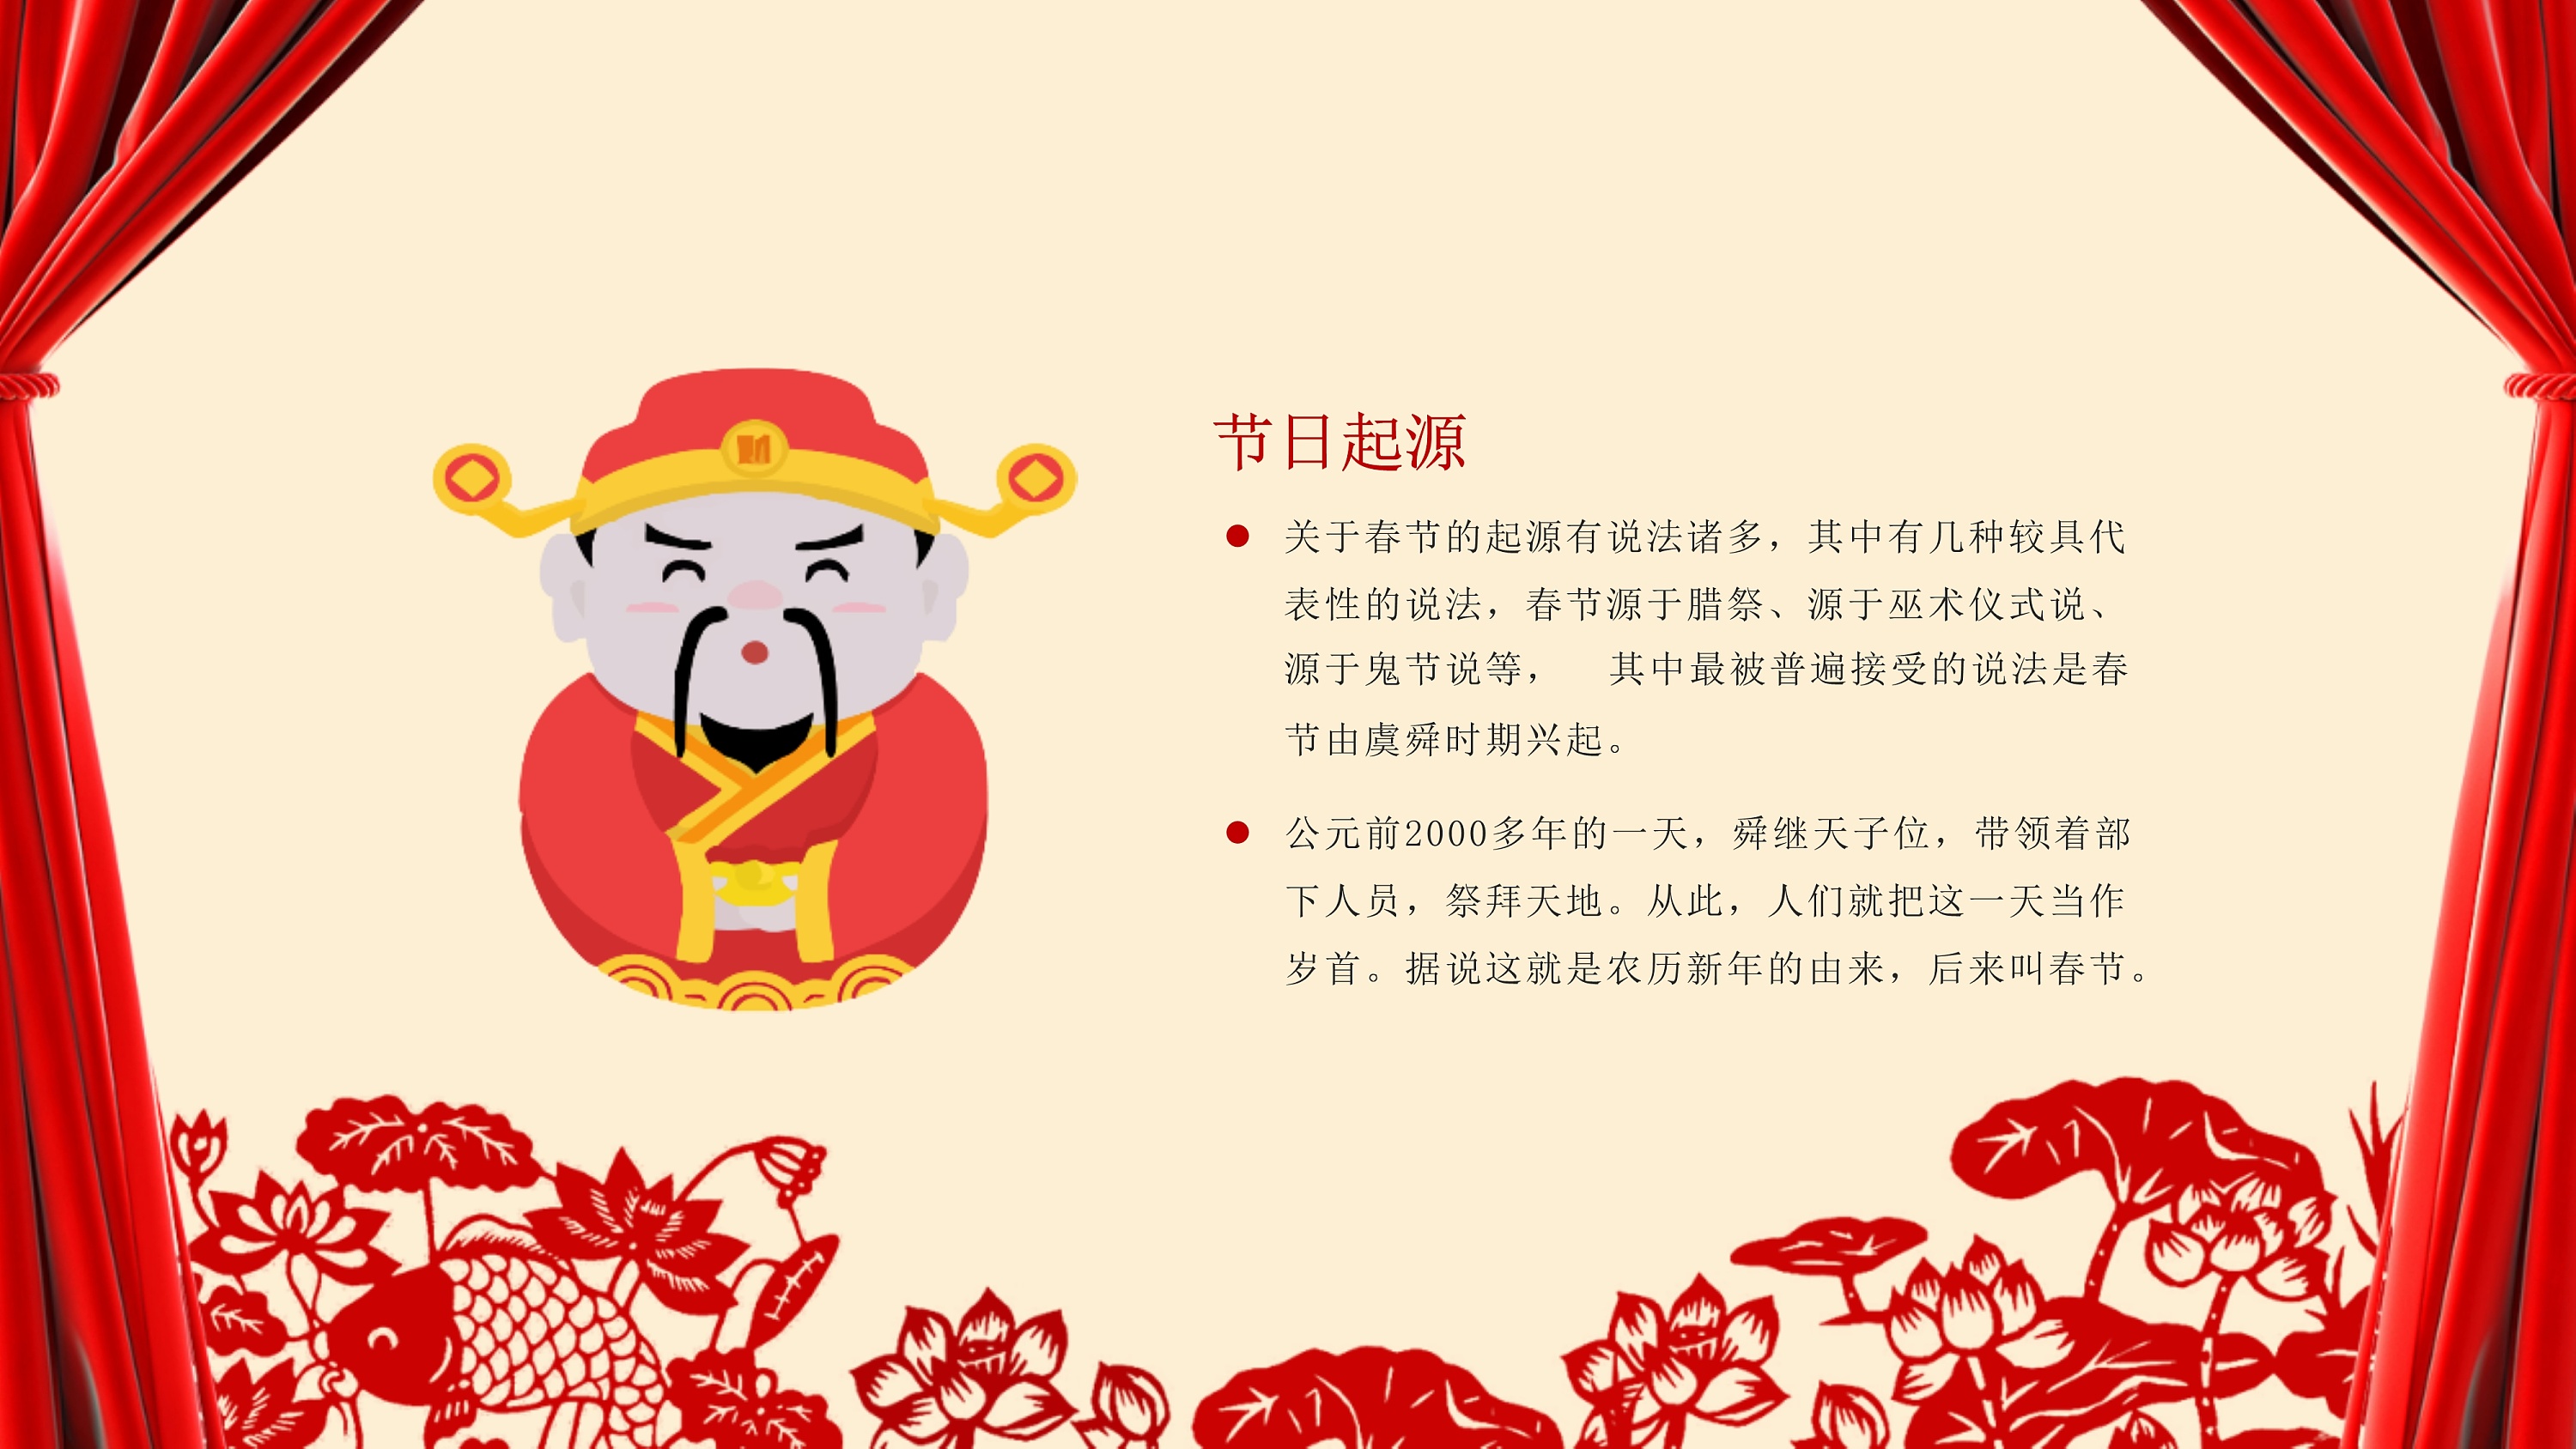 社火陕西民间一种庆祝春节的传统庆典狂欢活动。高台最为经典